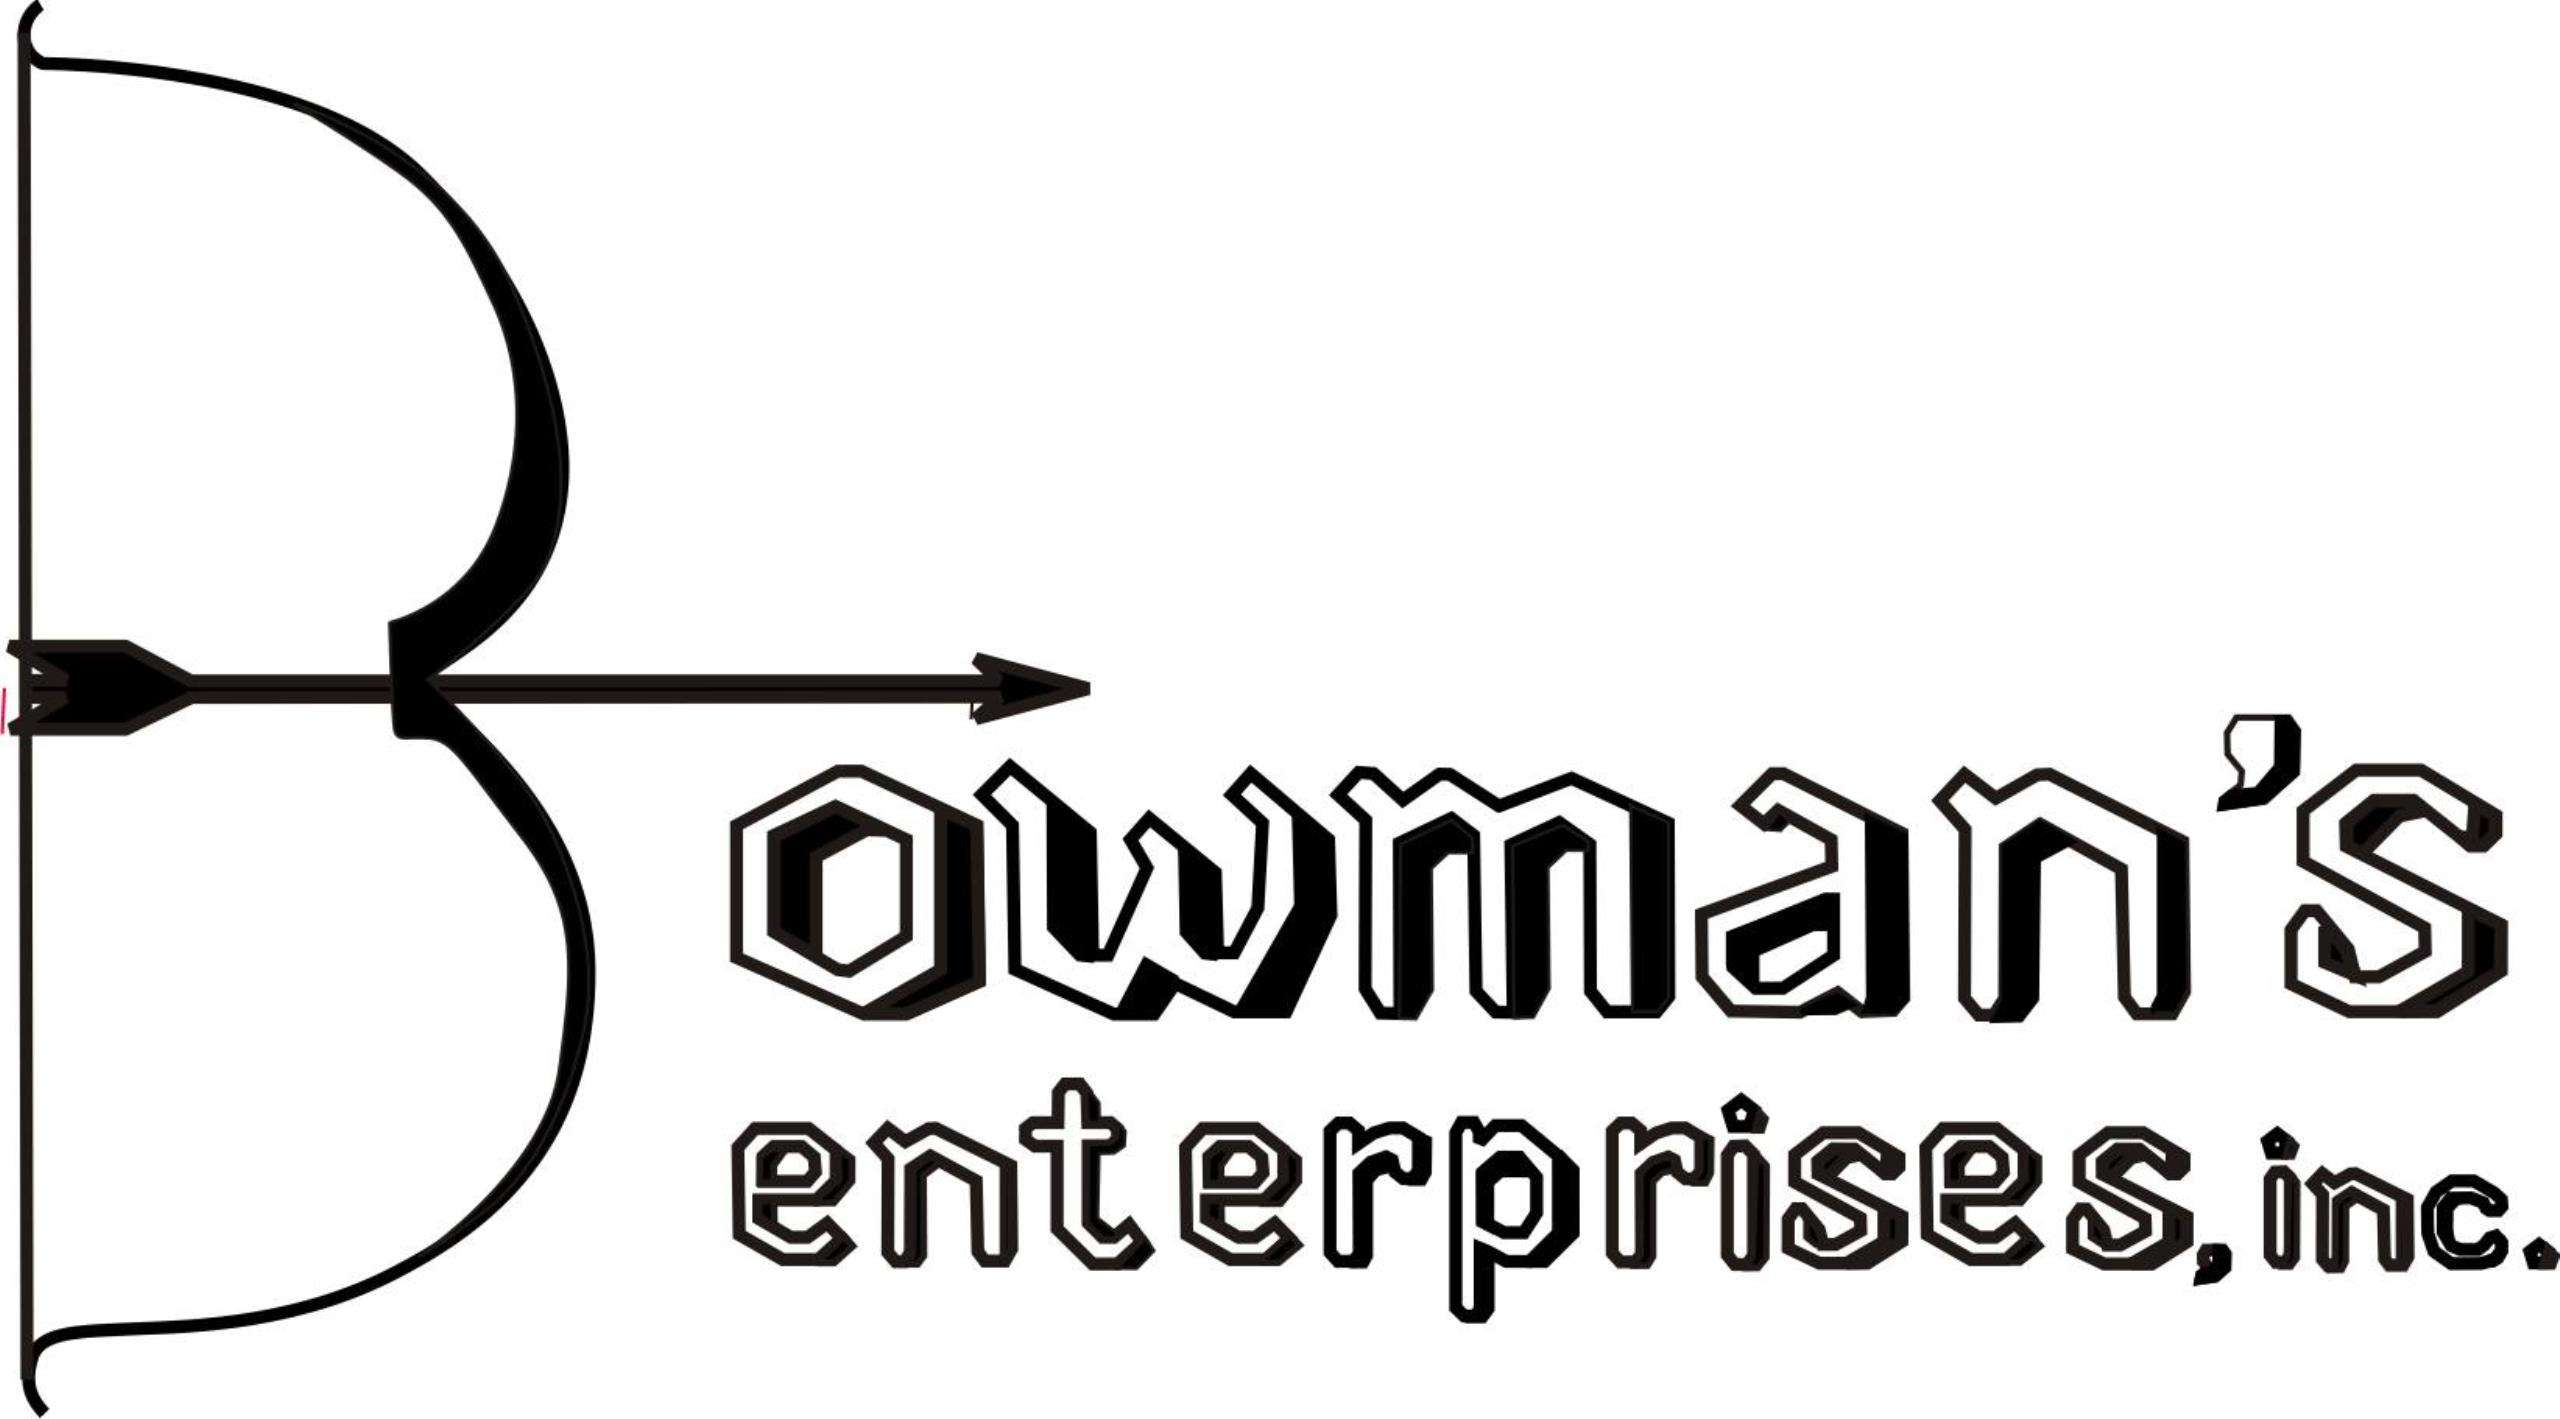 Bowman's Enterprises, Inc. Logo